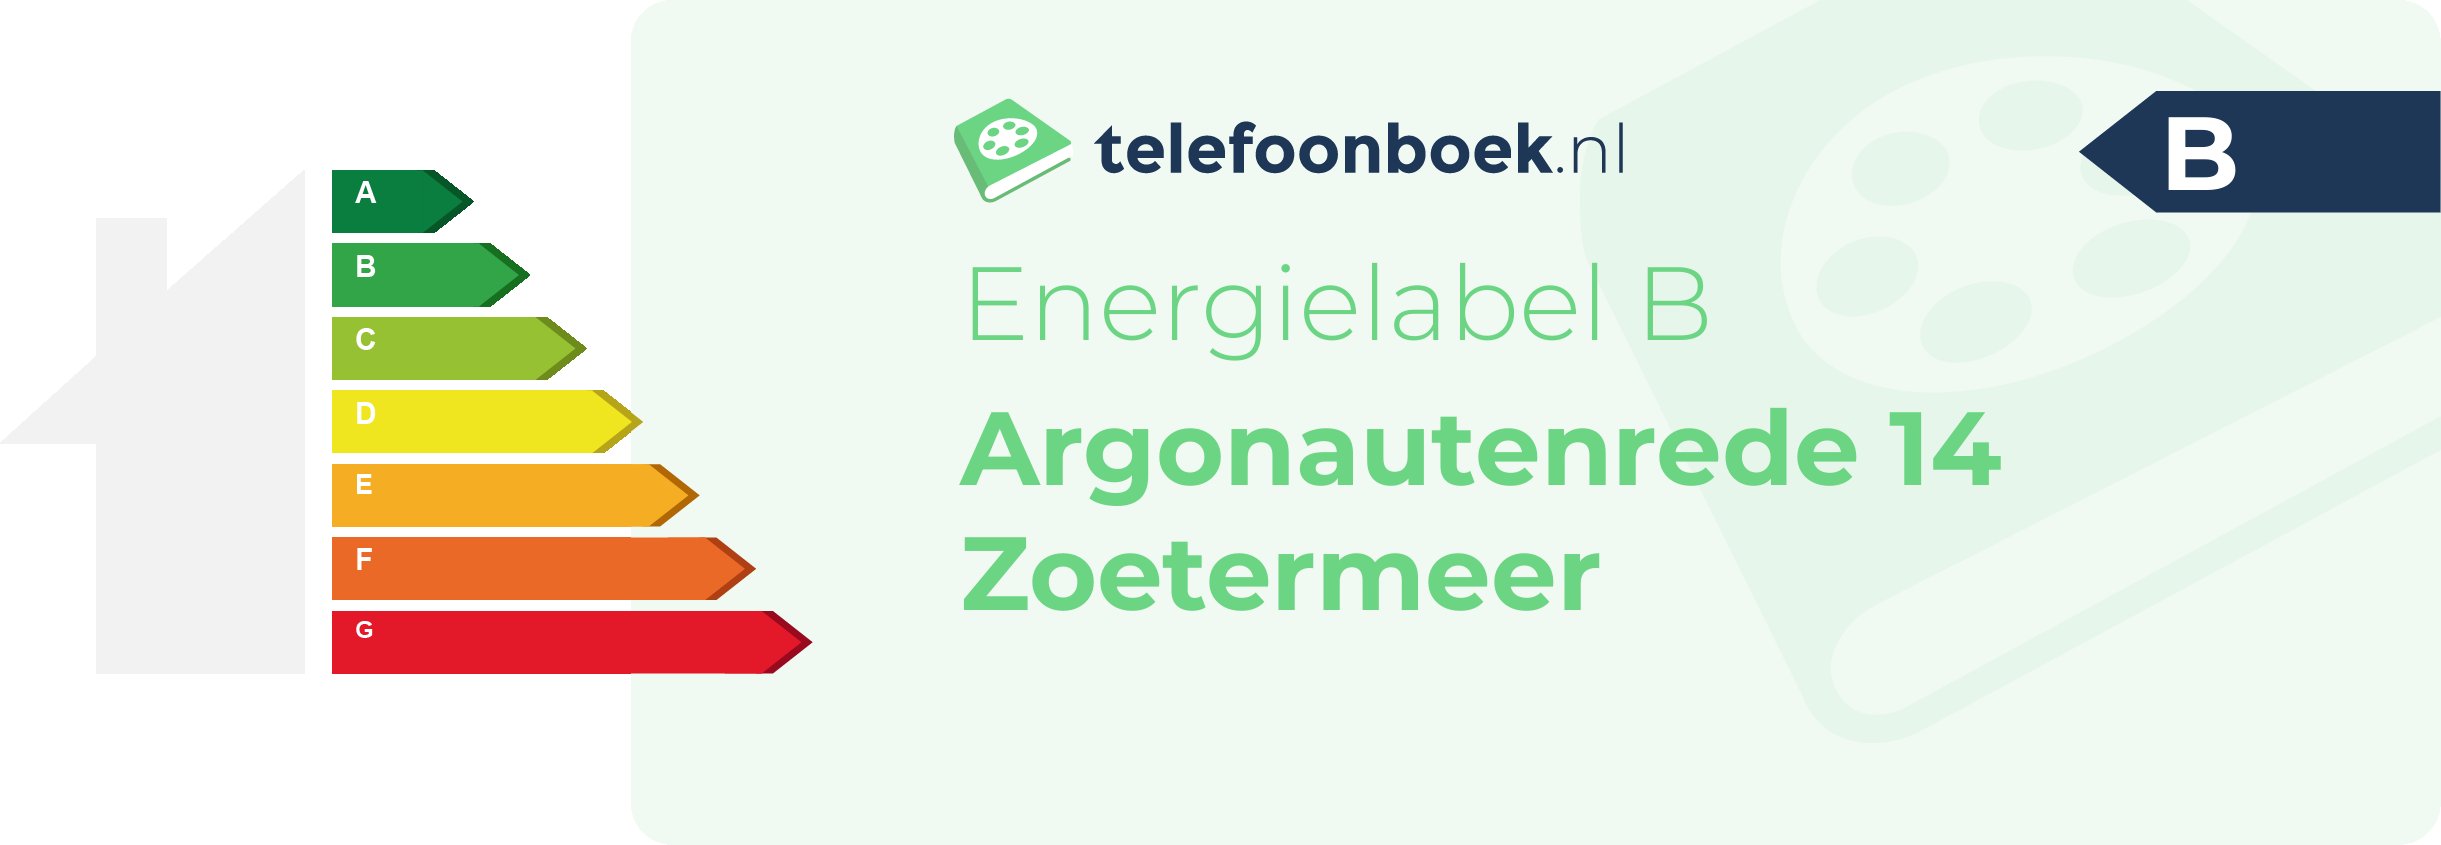 Energielabel Argonautenrede 14 Zoetermeer